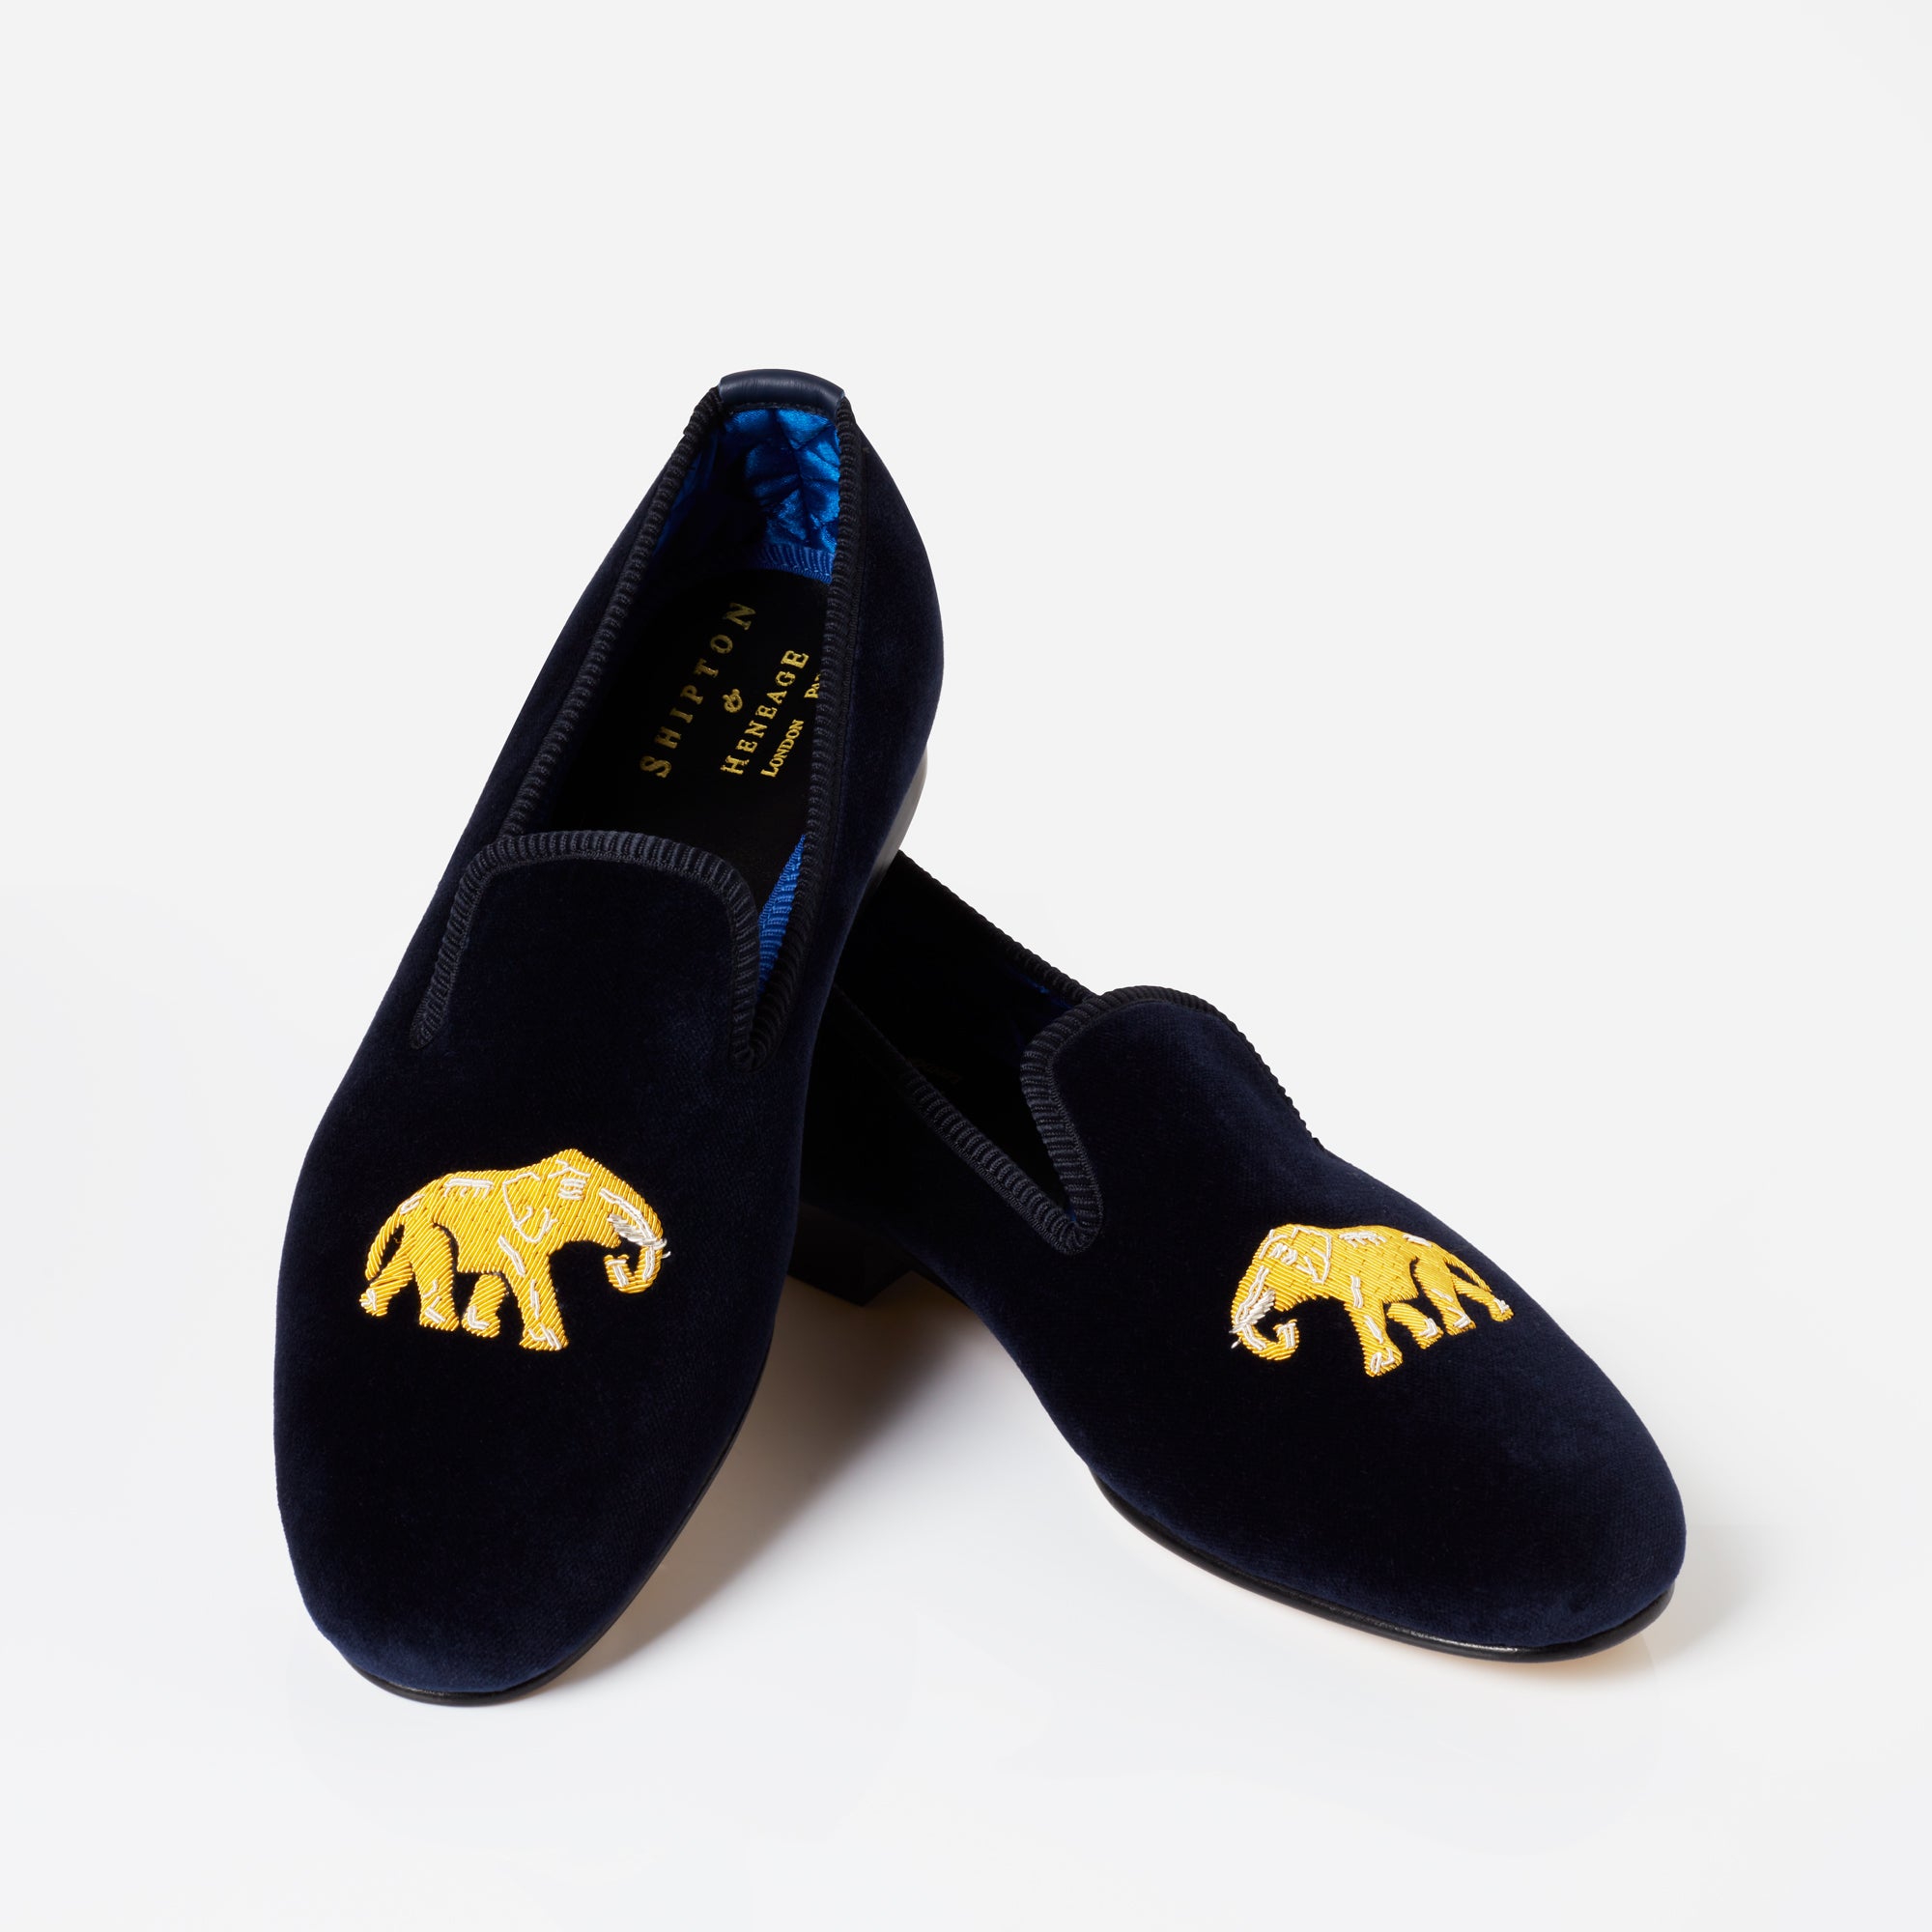 Skull & Crossbones Black Velvet Slip On Slippers UK 7 - Abbot's Shoes